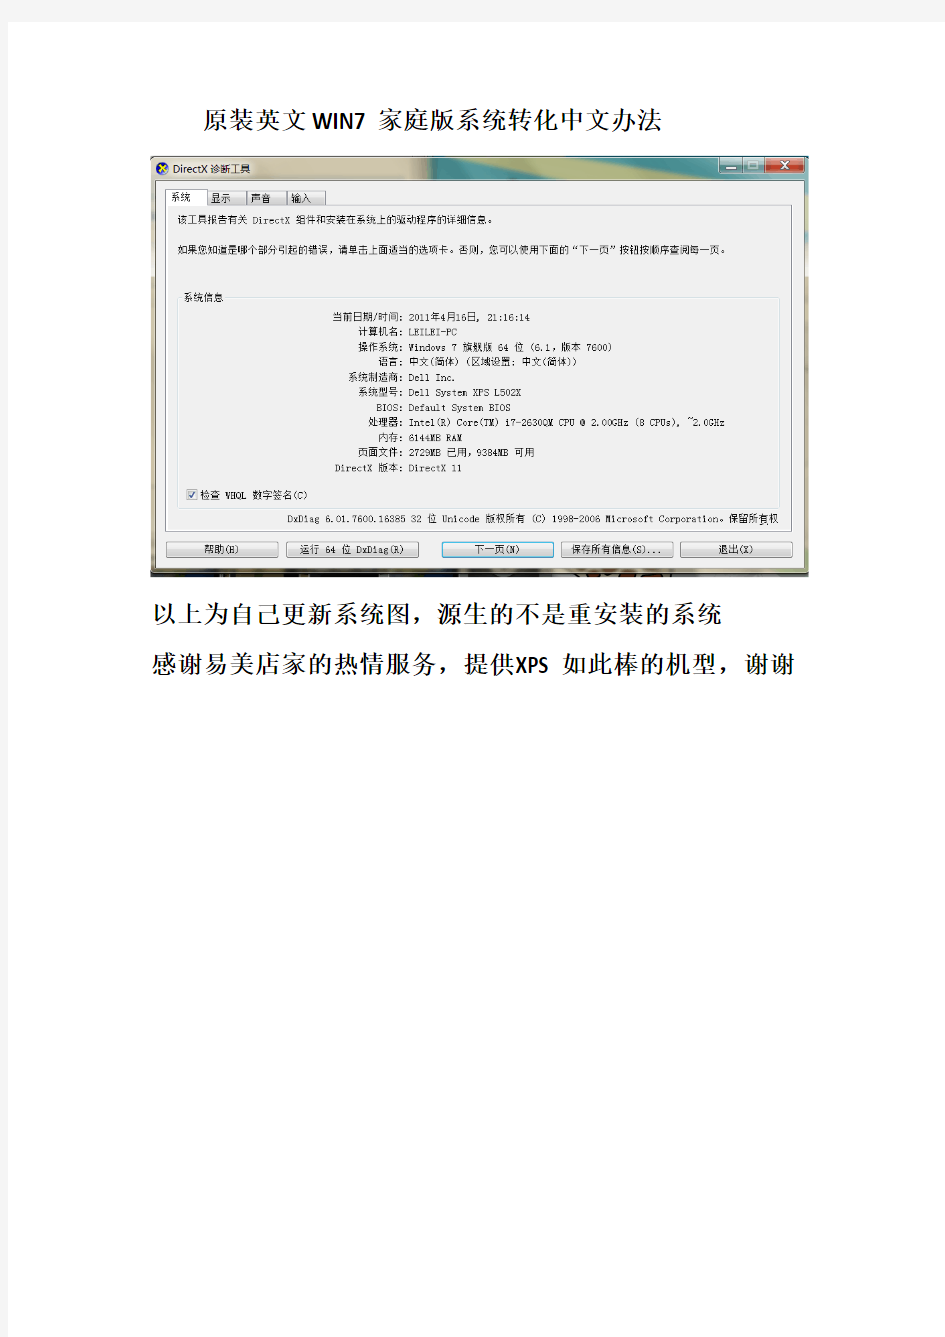 原装英文WIN7家庭版系统转化中文办法